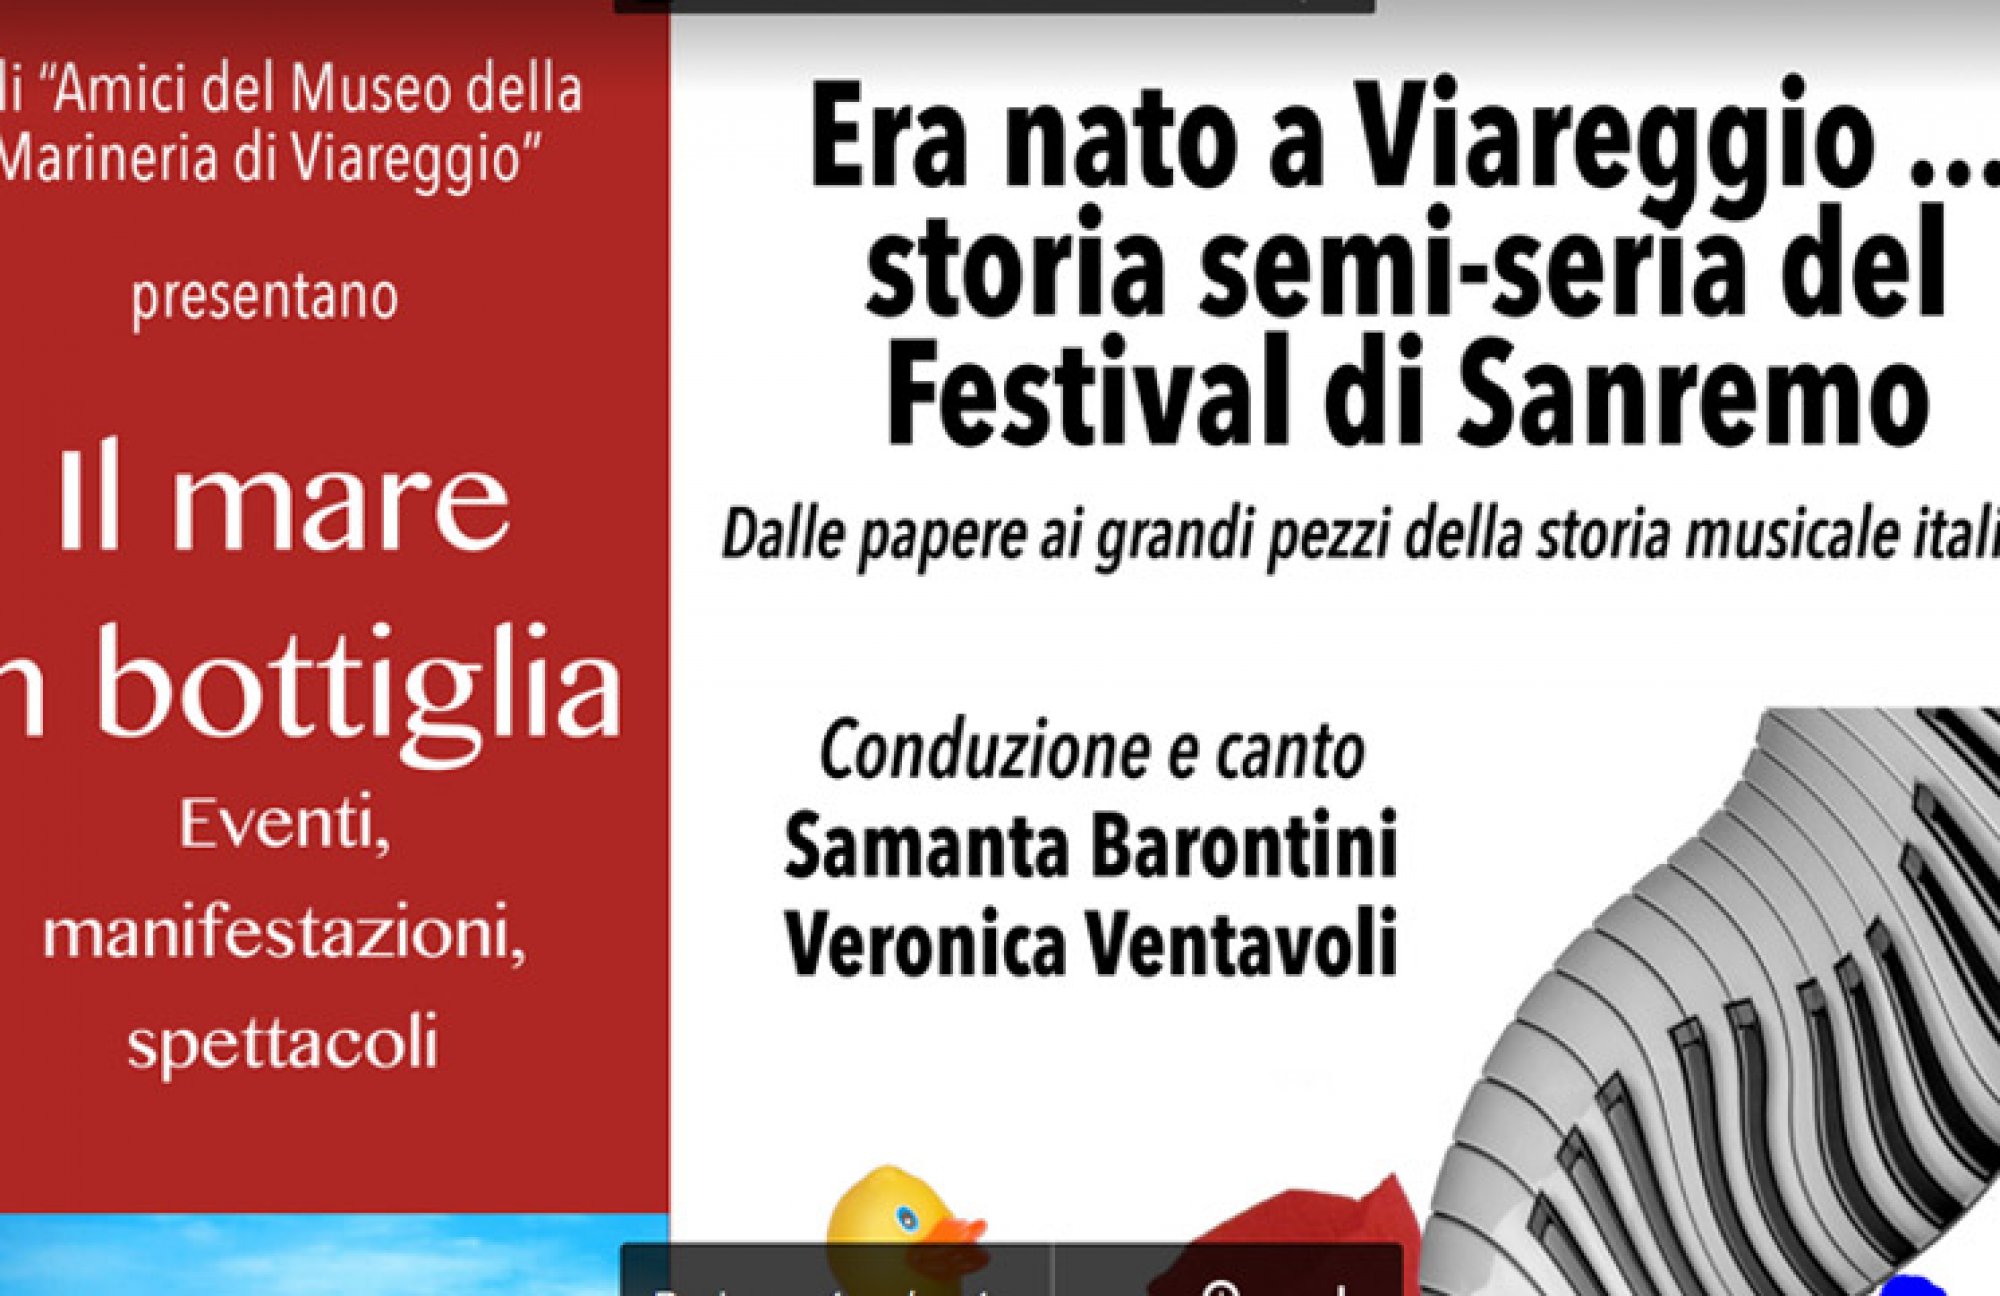 Storia semiseria del Festival di Sanremo